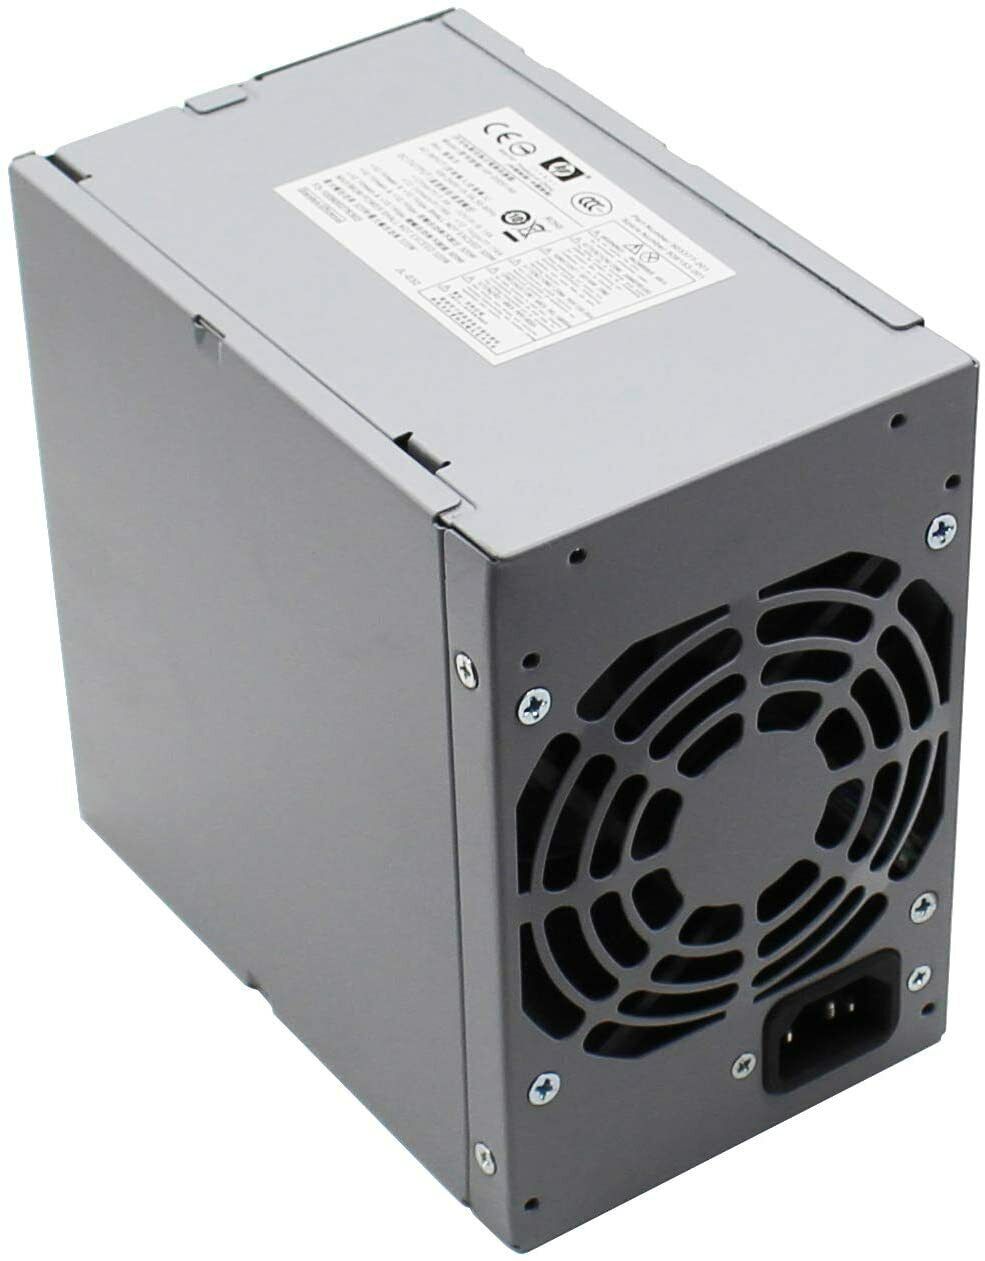 New Power Supply D10-320P2A for HP MT 6000 6200 6300 8000 8200 CFH-0320EWWA 320W